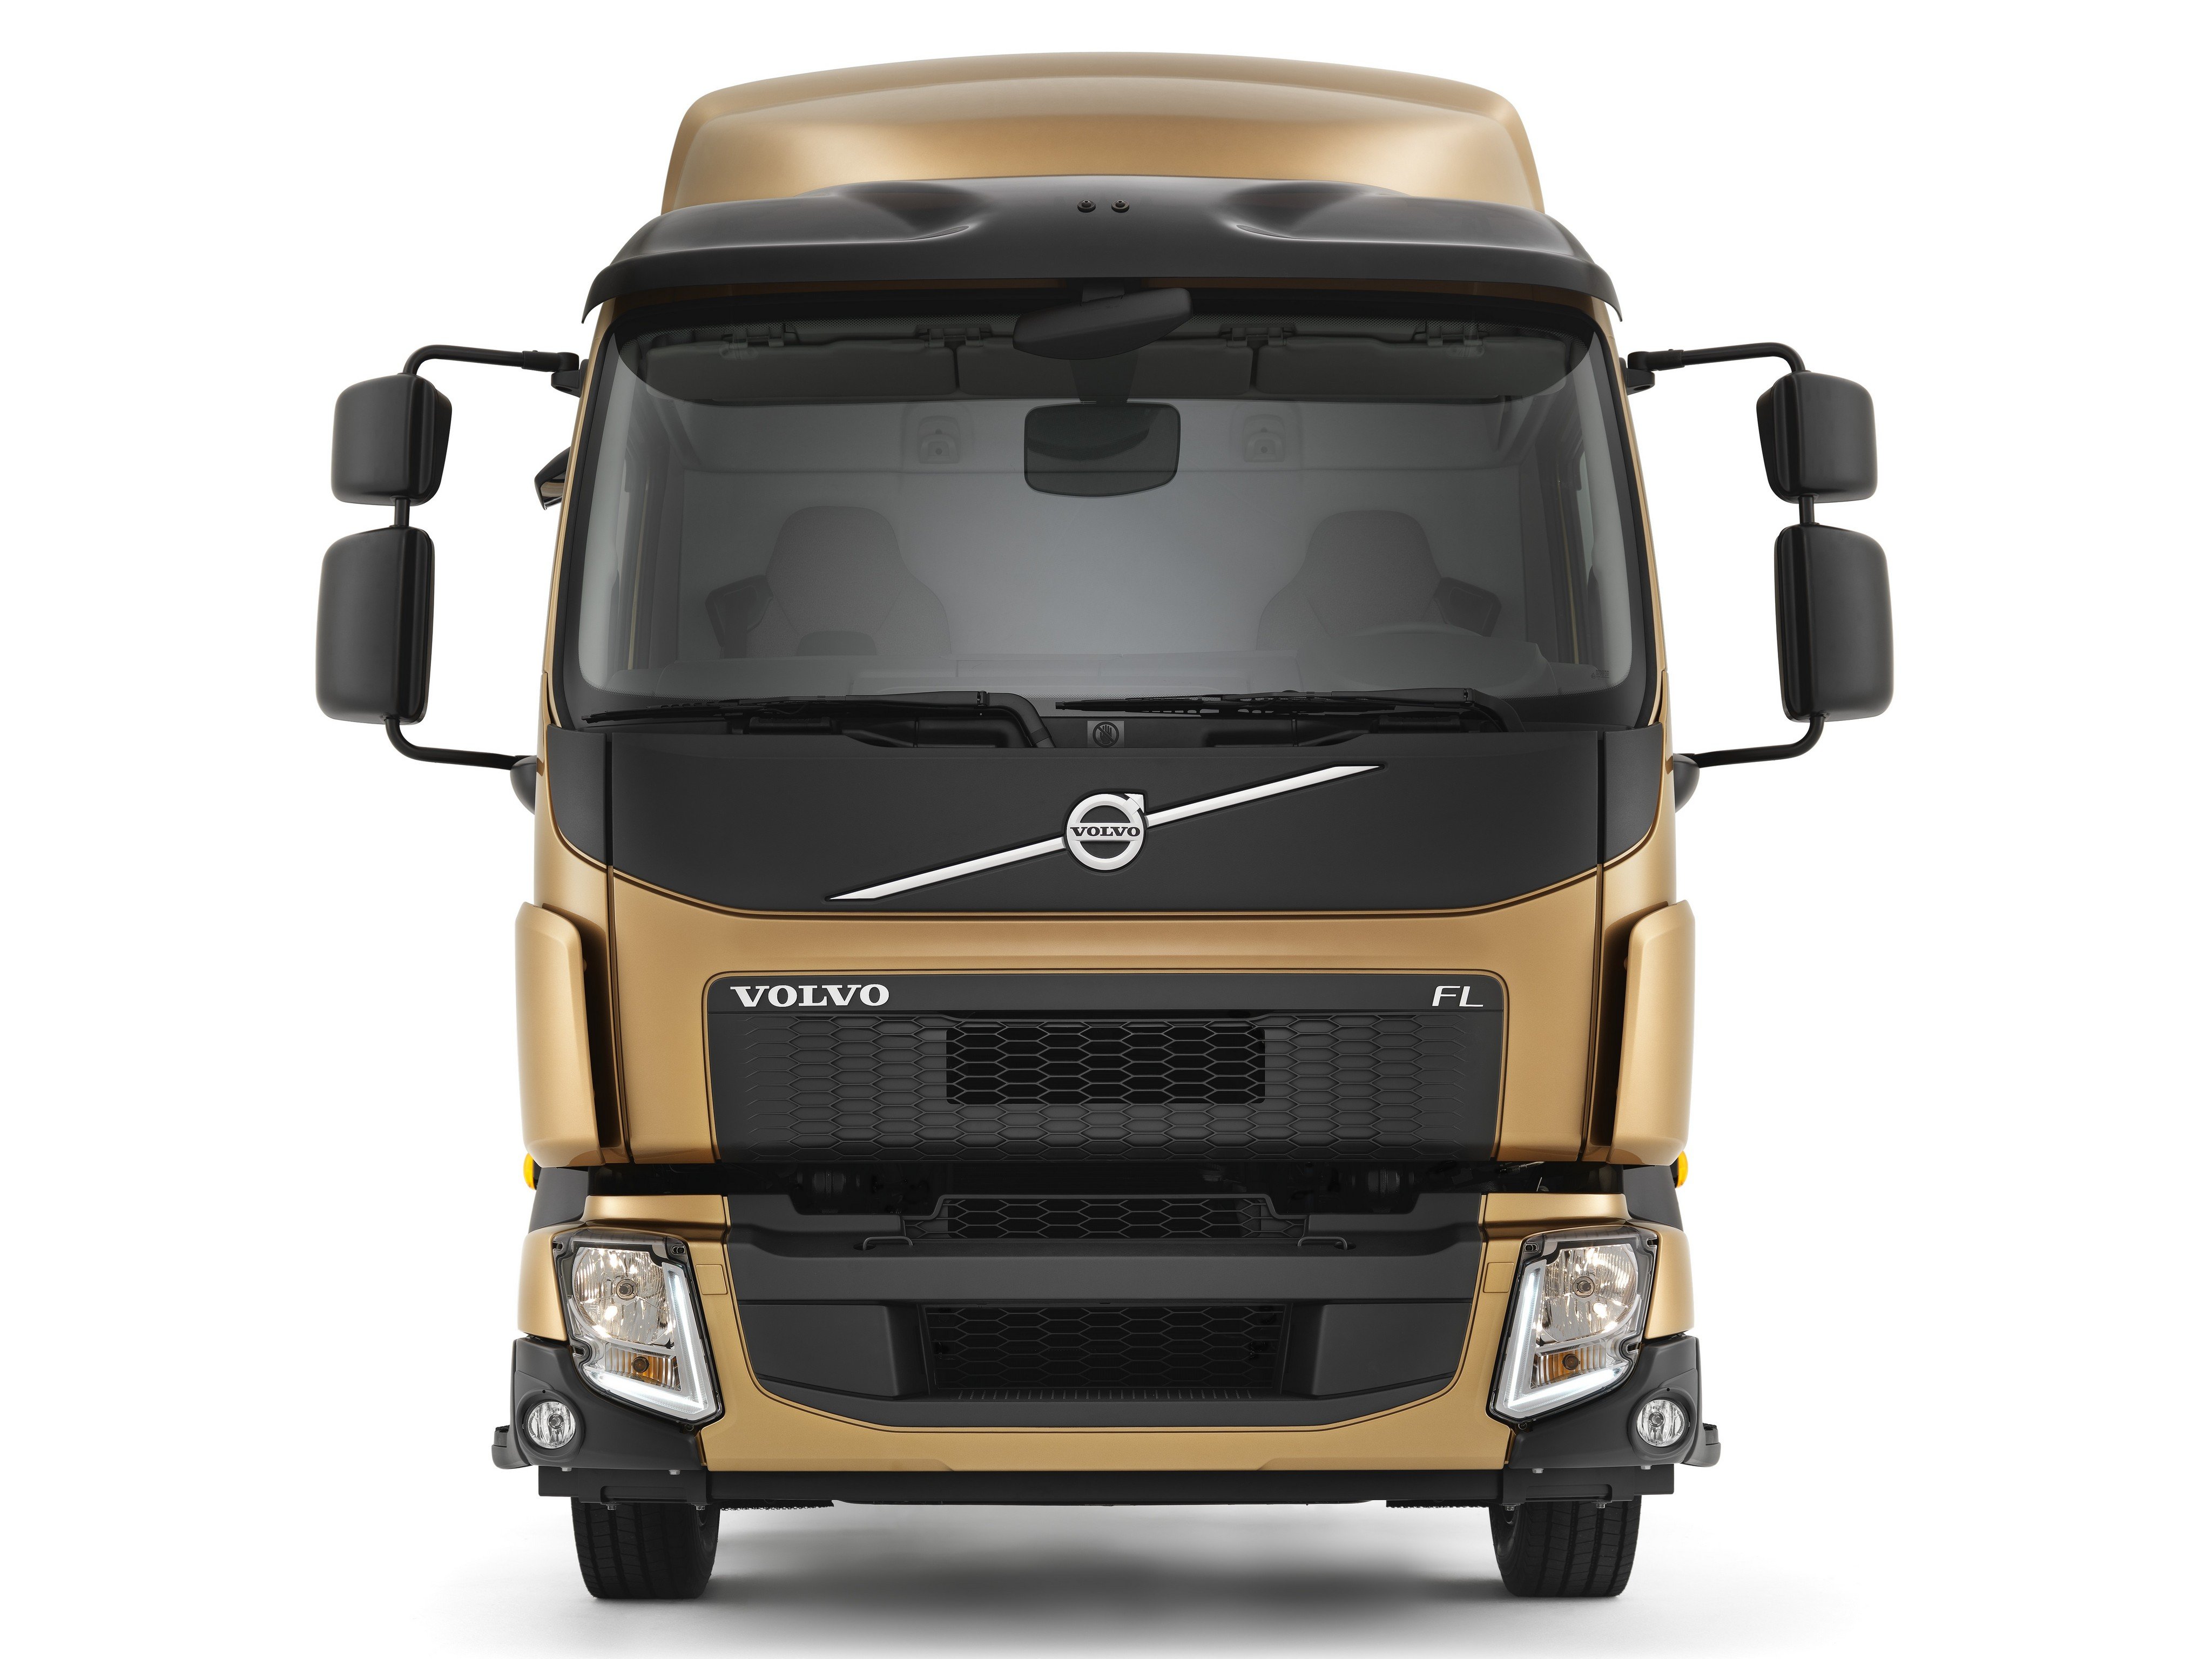 2013, Volvo, F l, 210, Semi, Tractor Wallpaper